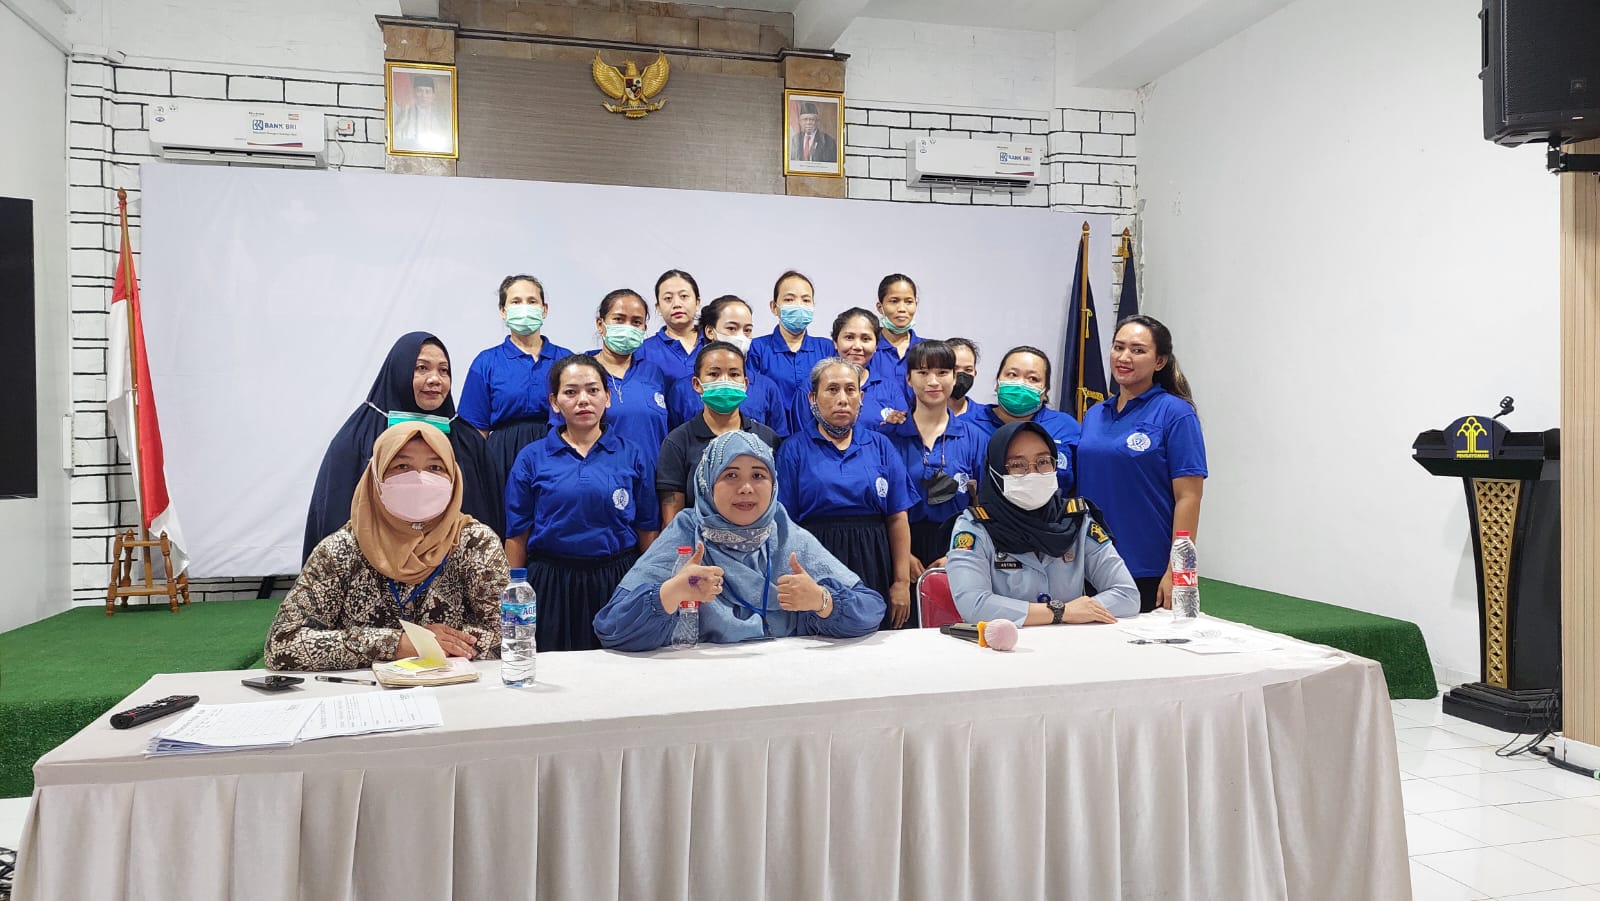 Jasa Pelatihan HRD Berkualitas  Melayani Wilayah Palembang Hub 6281386200445